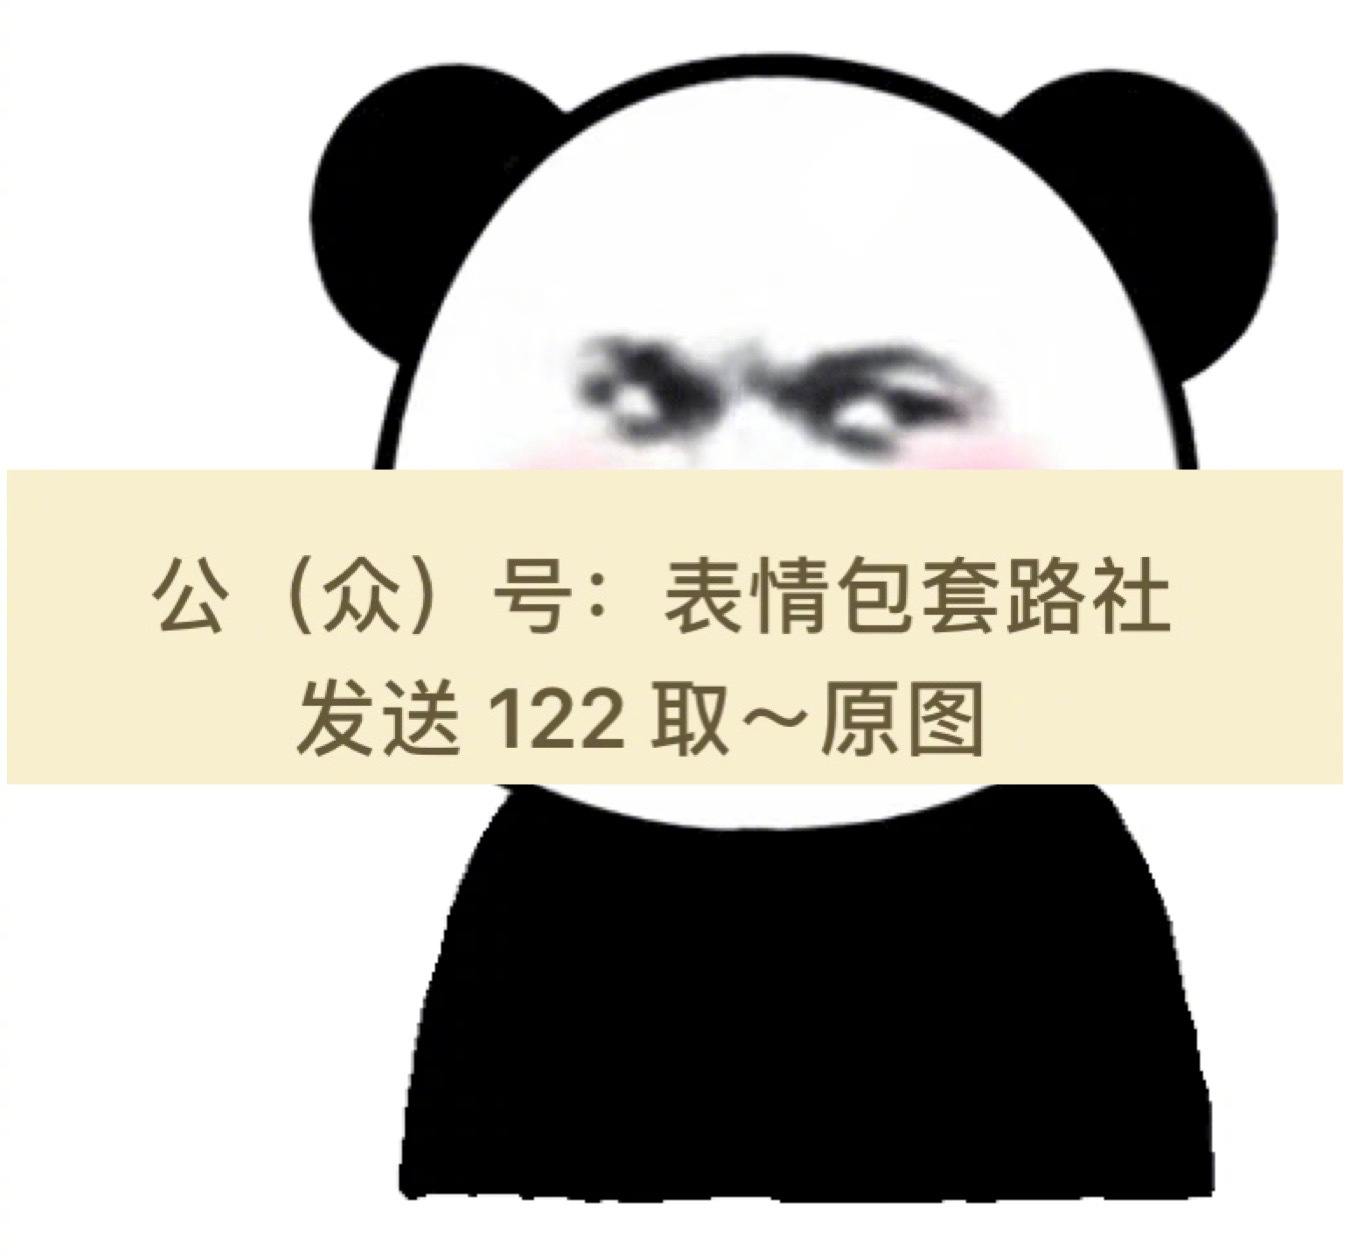 熊猫头超大霸屏表情包(含代码)变大超大熊猫表情包熊猫头qq超大捌屏